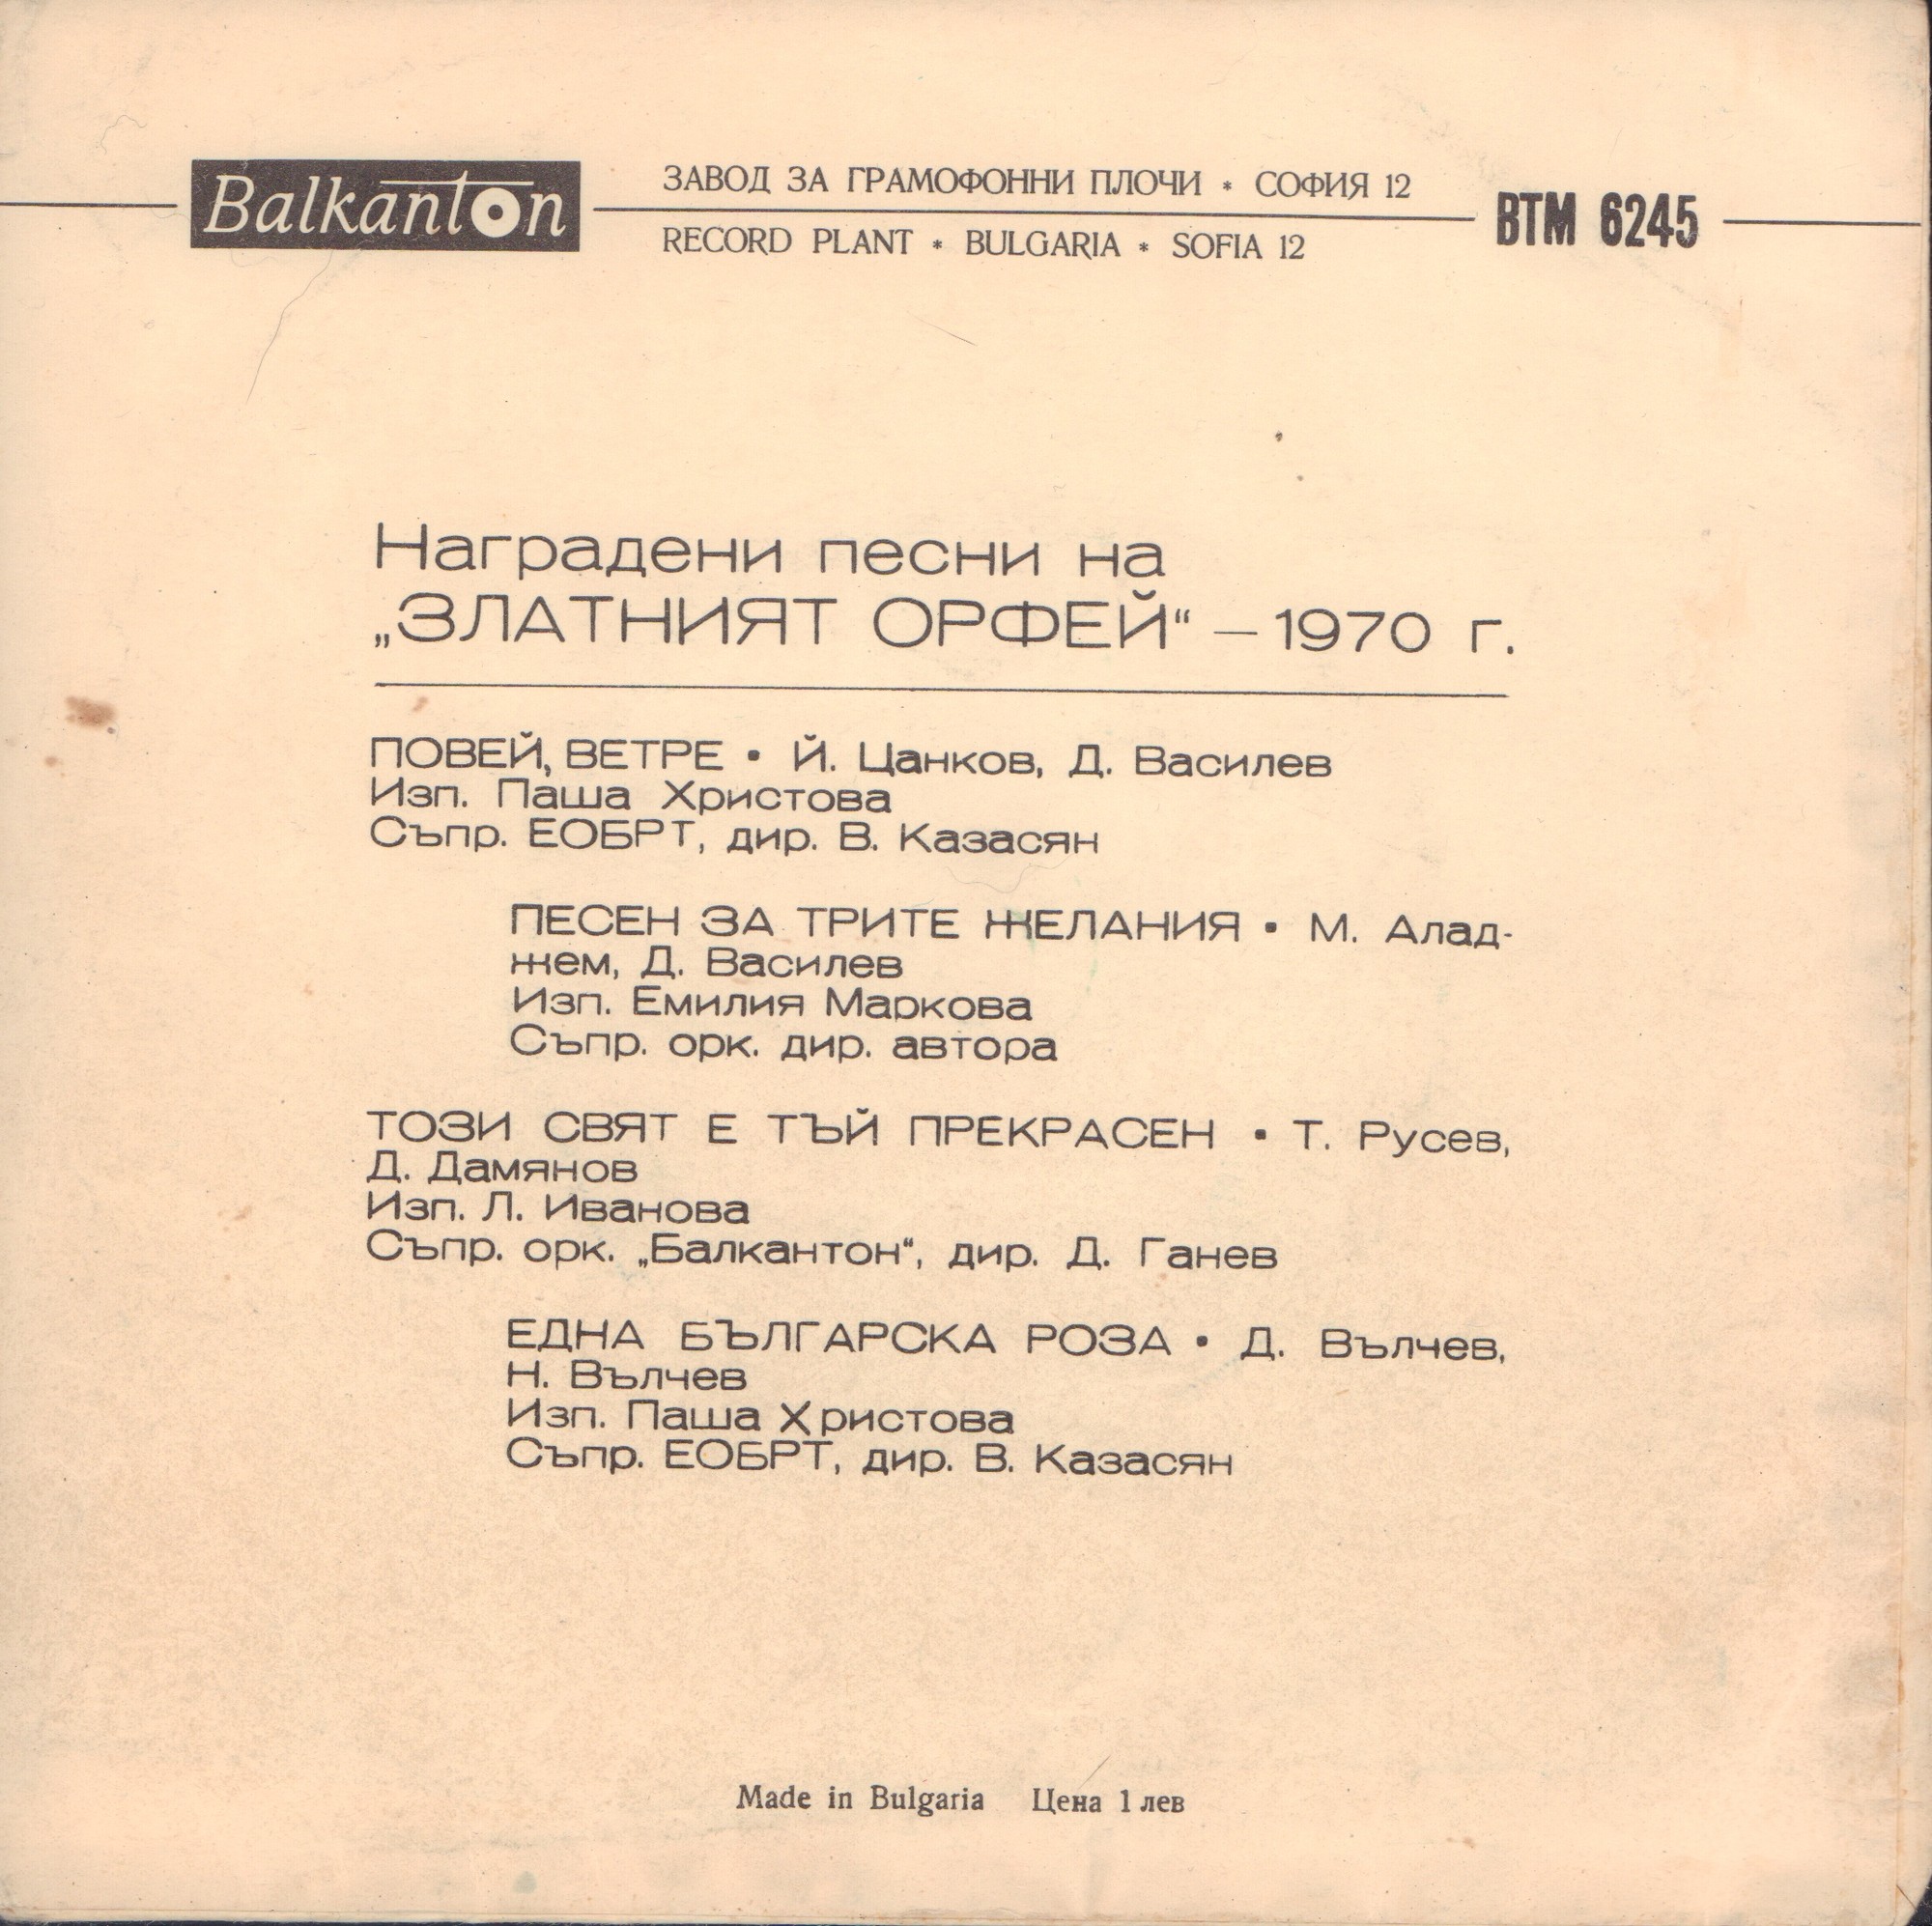 Наградени песни на "Златният Орфей" 1970 г.